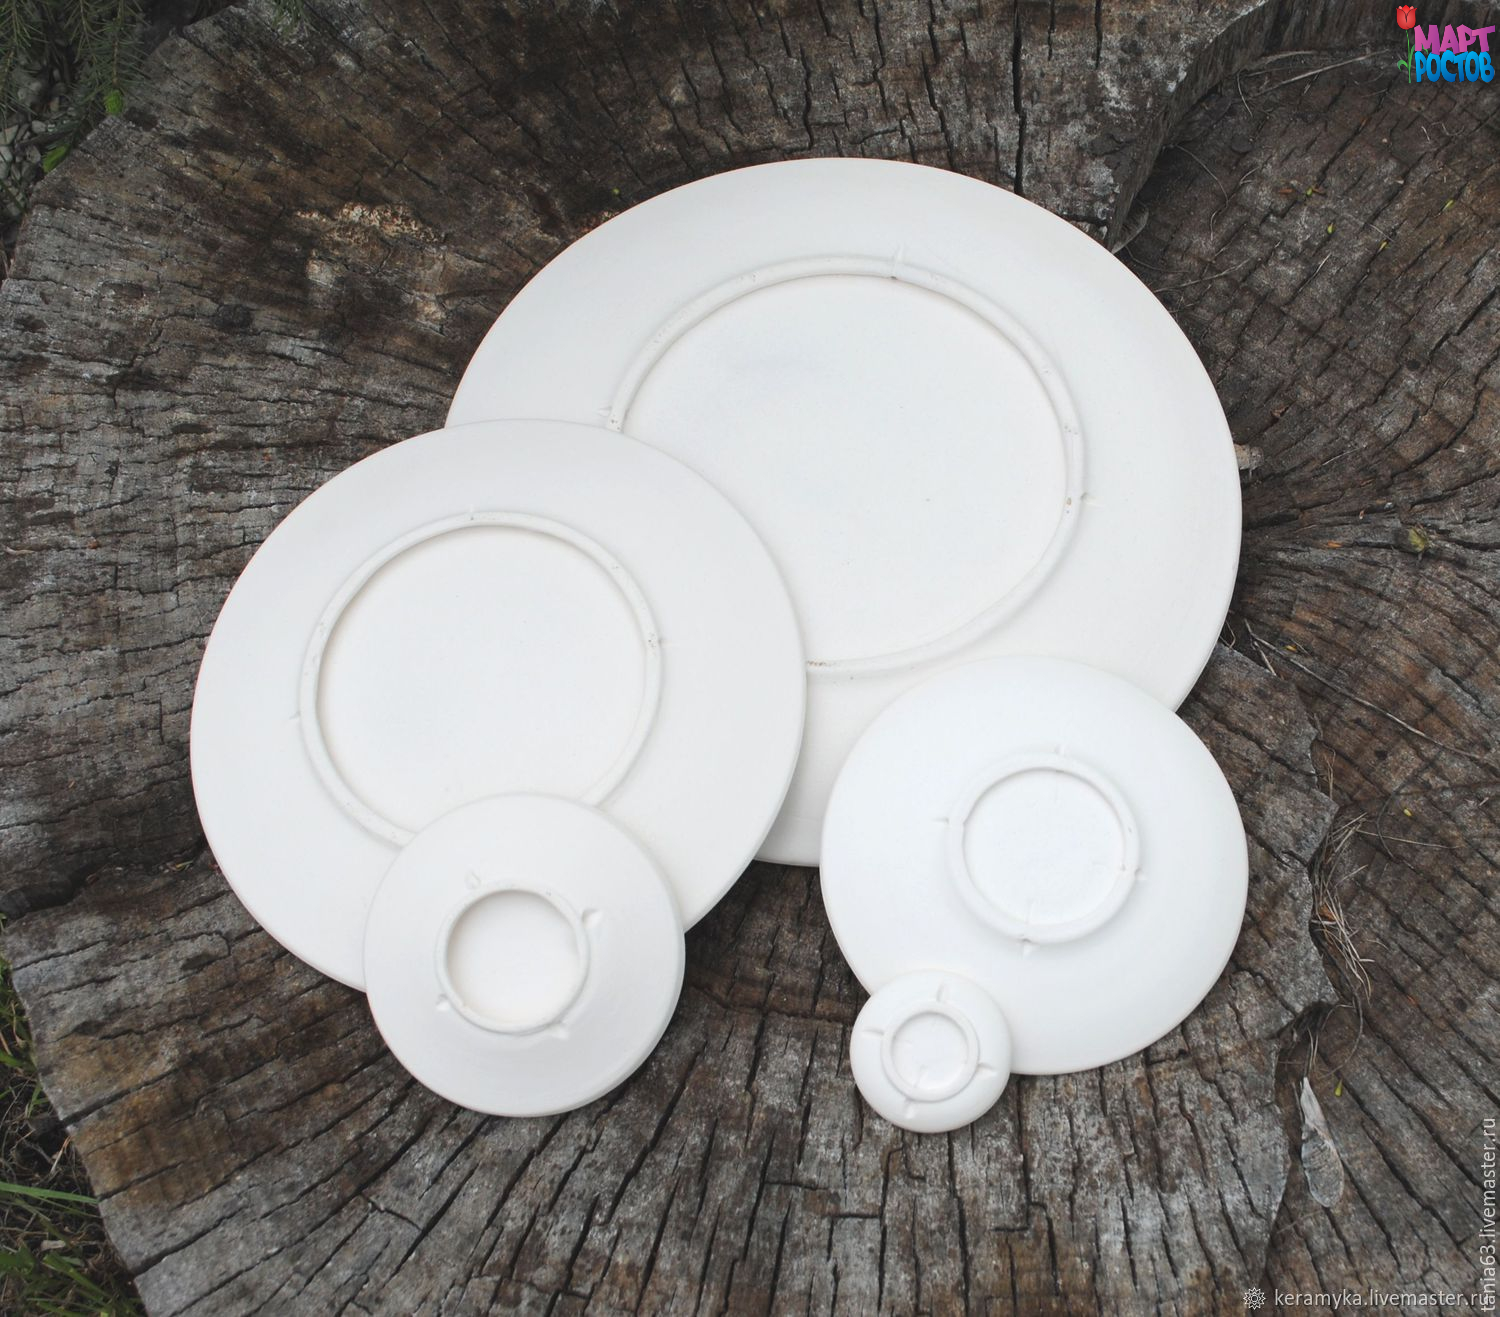 Заготовки керамических тарелок (бельё) 12 см